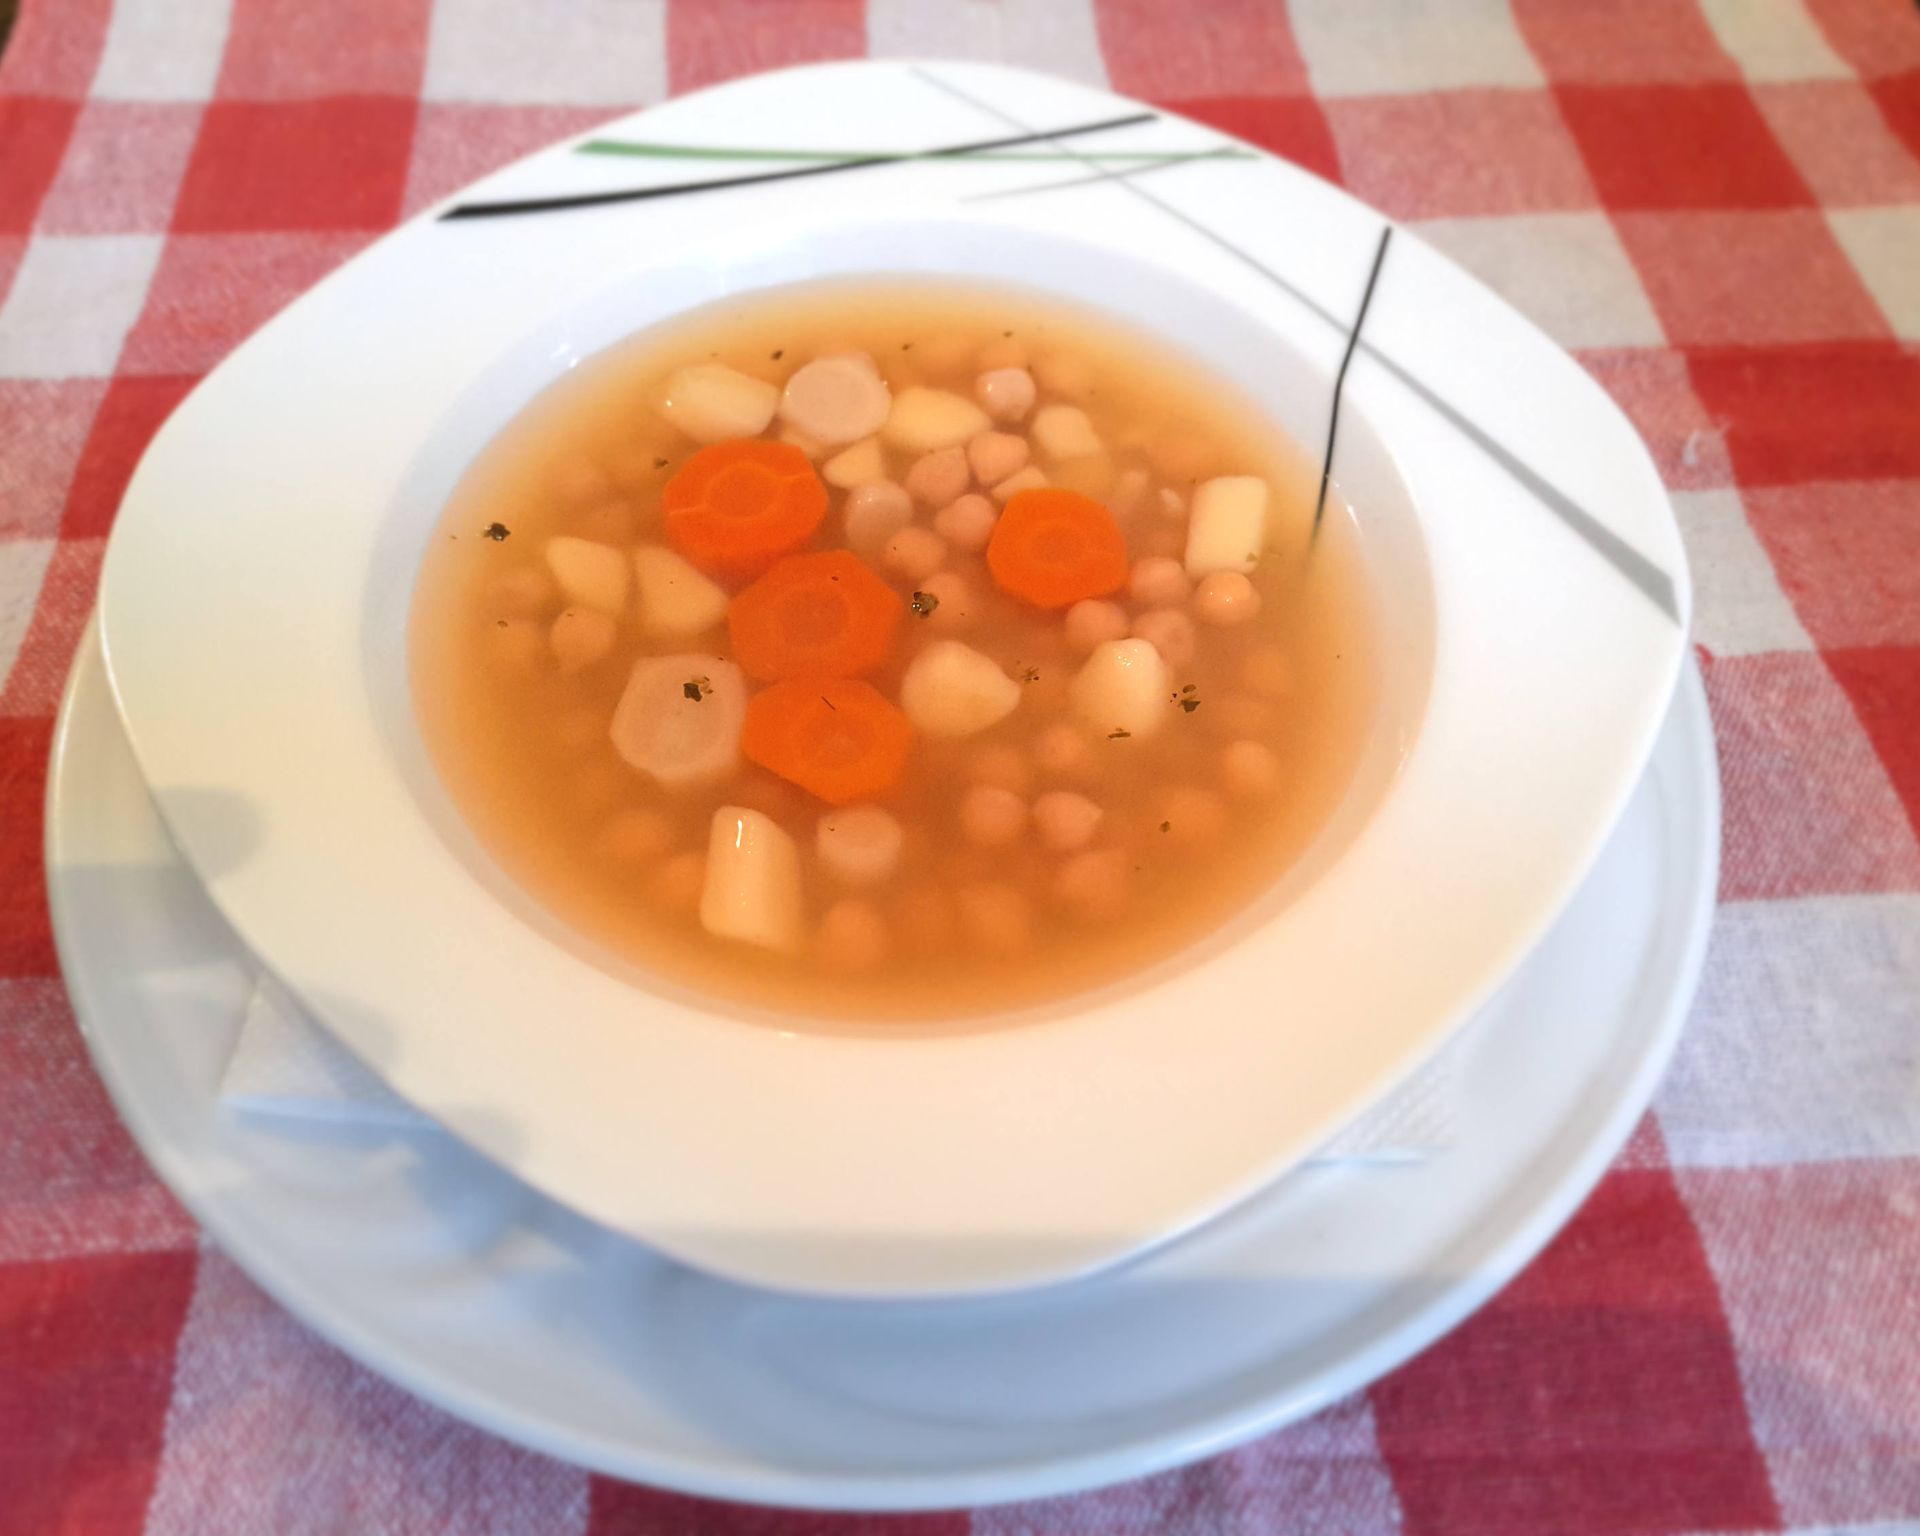 Zeleninovo-strukovinová polievka s cícerom a petržlenom, mrkva